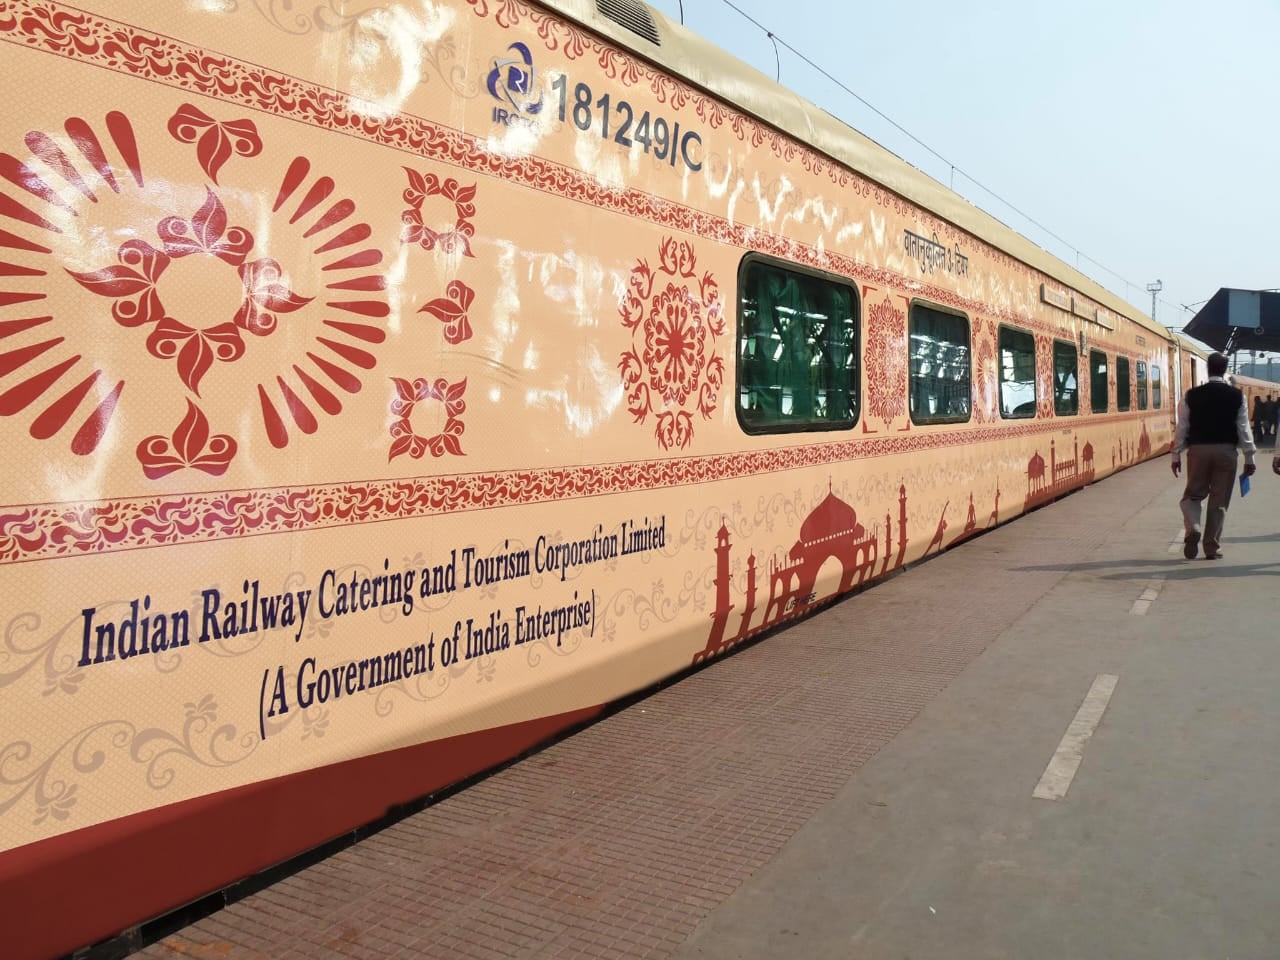 धार्मिक पर्यटन को बढ़ावा देने के लिए आईआरसीटीसी ने श्री रामायण यात्रा टूर शुरू किए